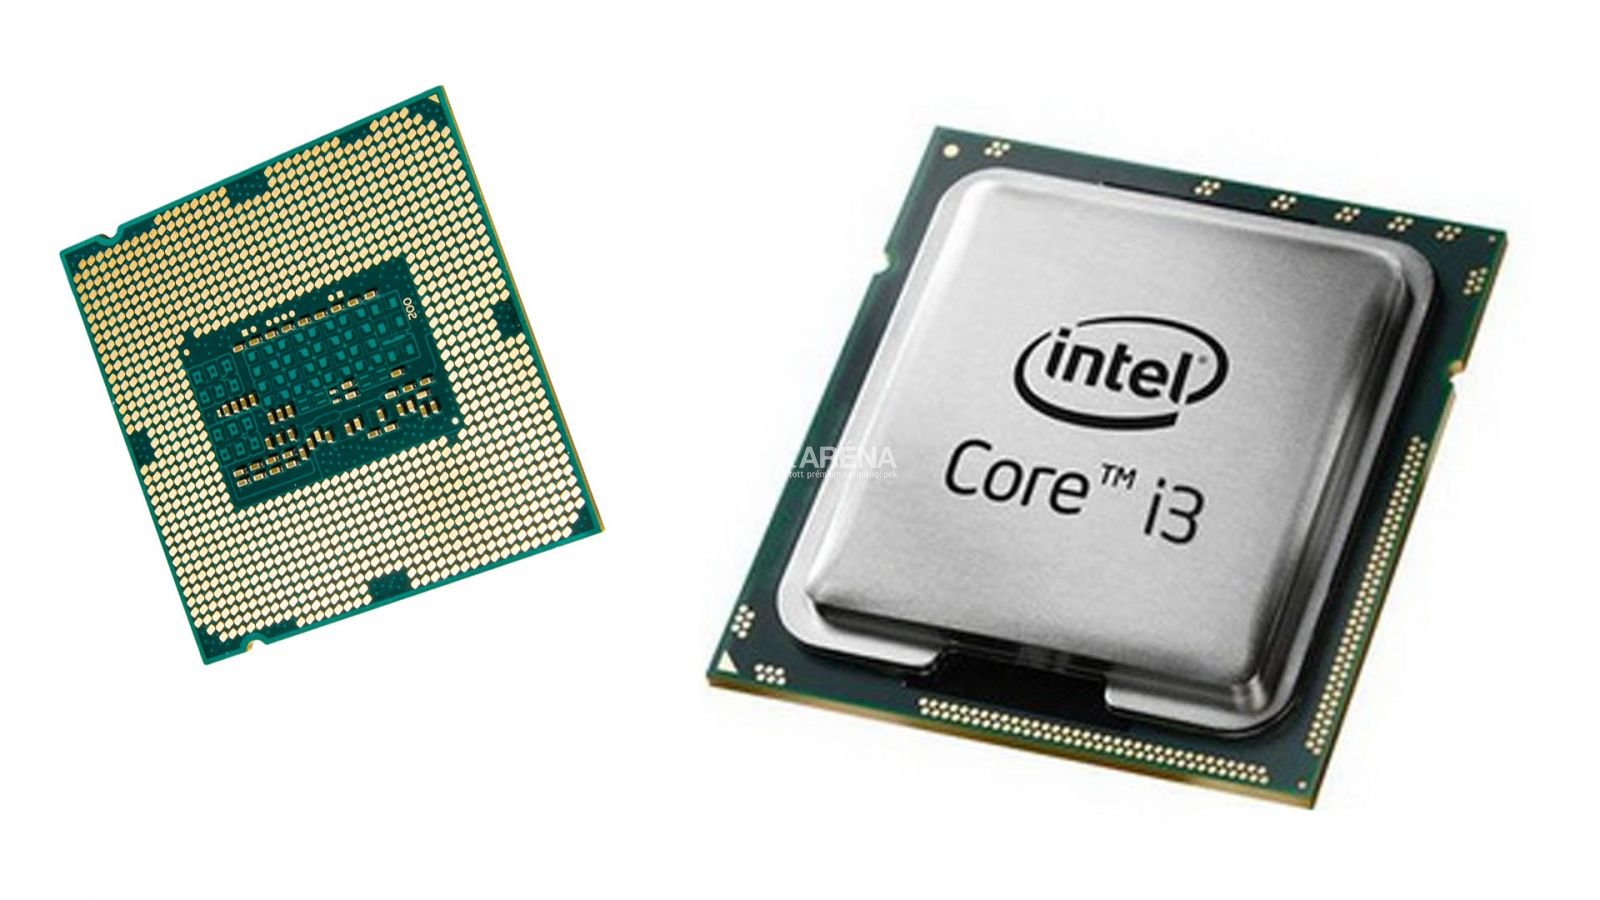 Интел core i3. Процессор Intel Core i3. Intel Core i3 сокет. Intel CPU Core i3. Intel i3 550.